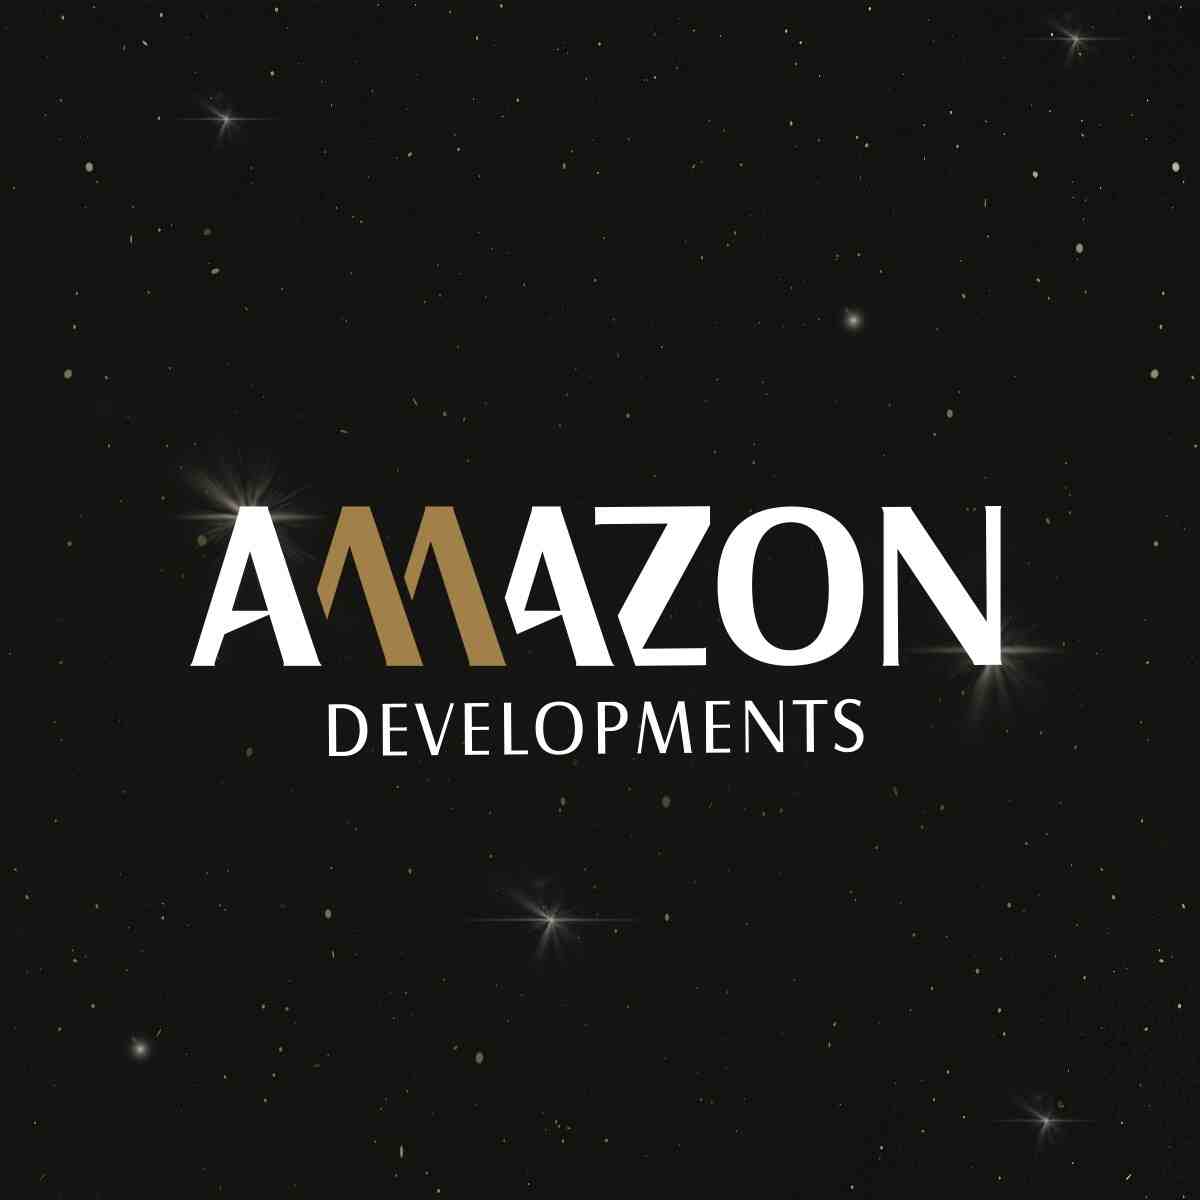 أمازون للتطوير العقاري - Amazon Developments